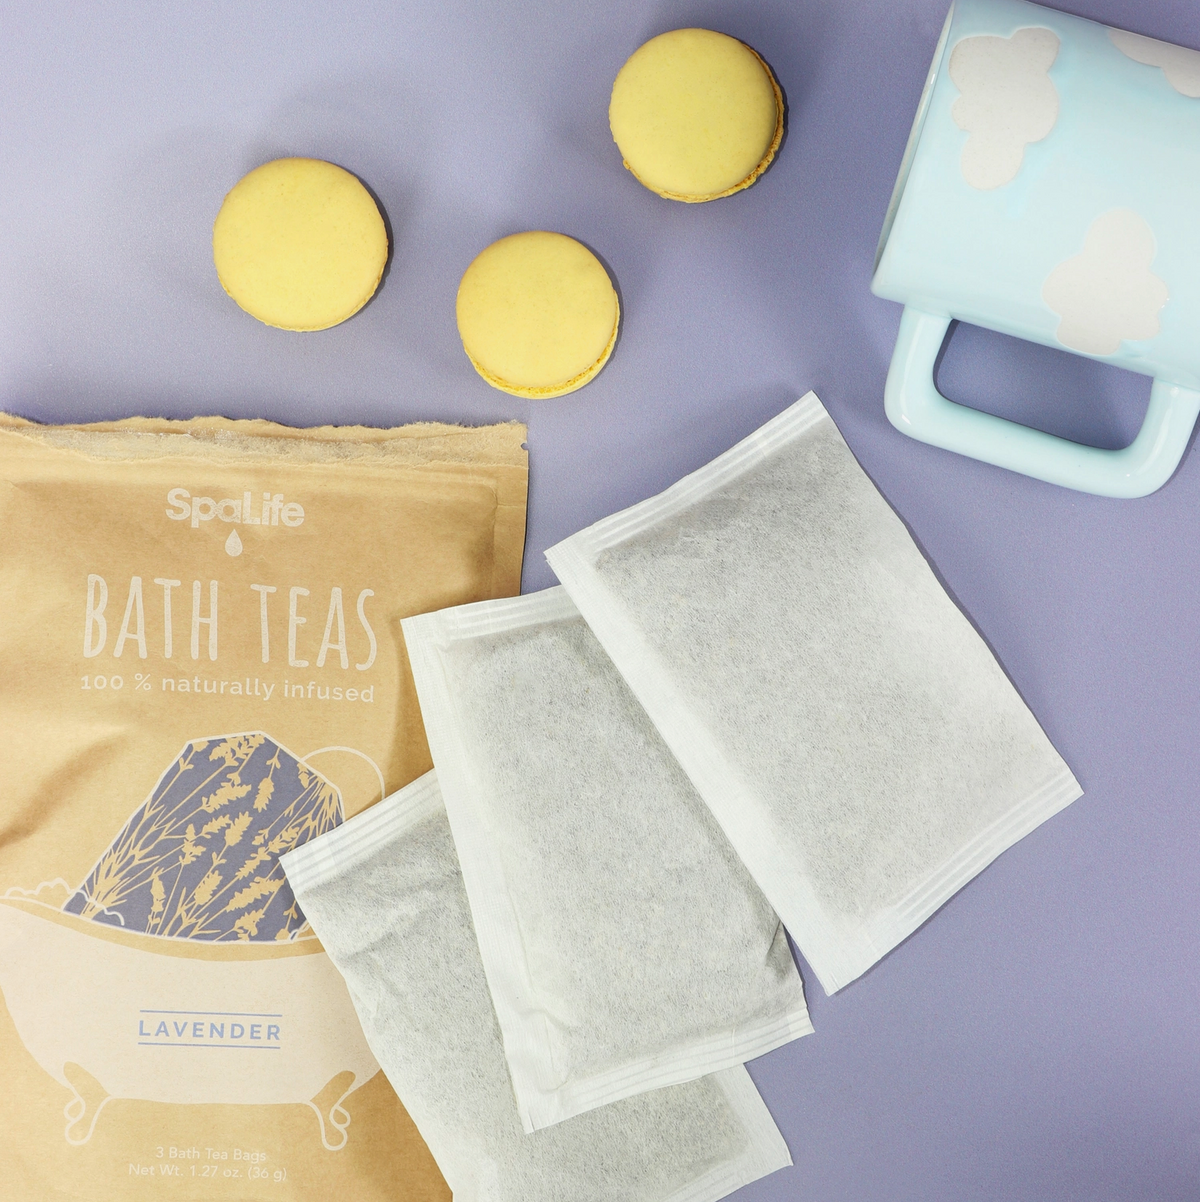 Lavender Bath Tea